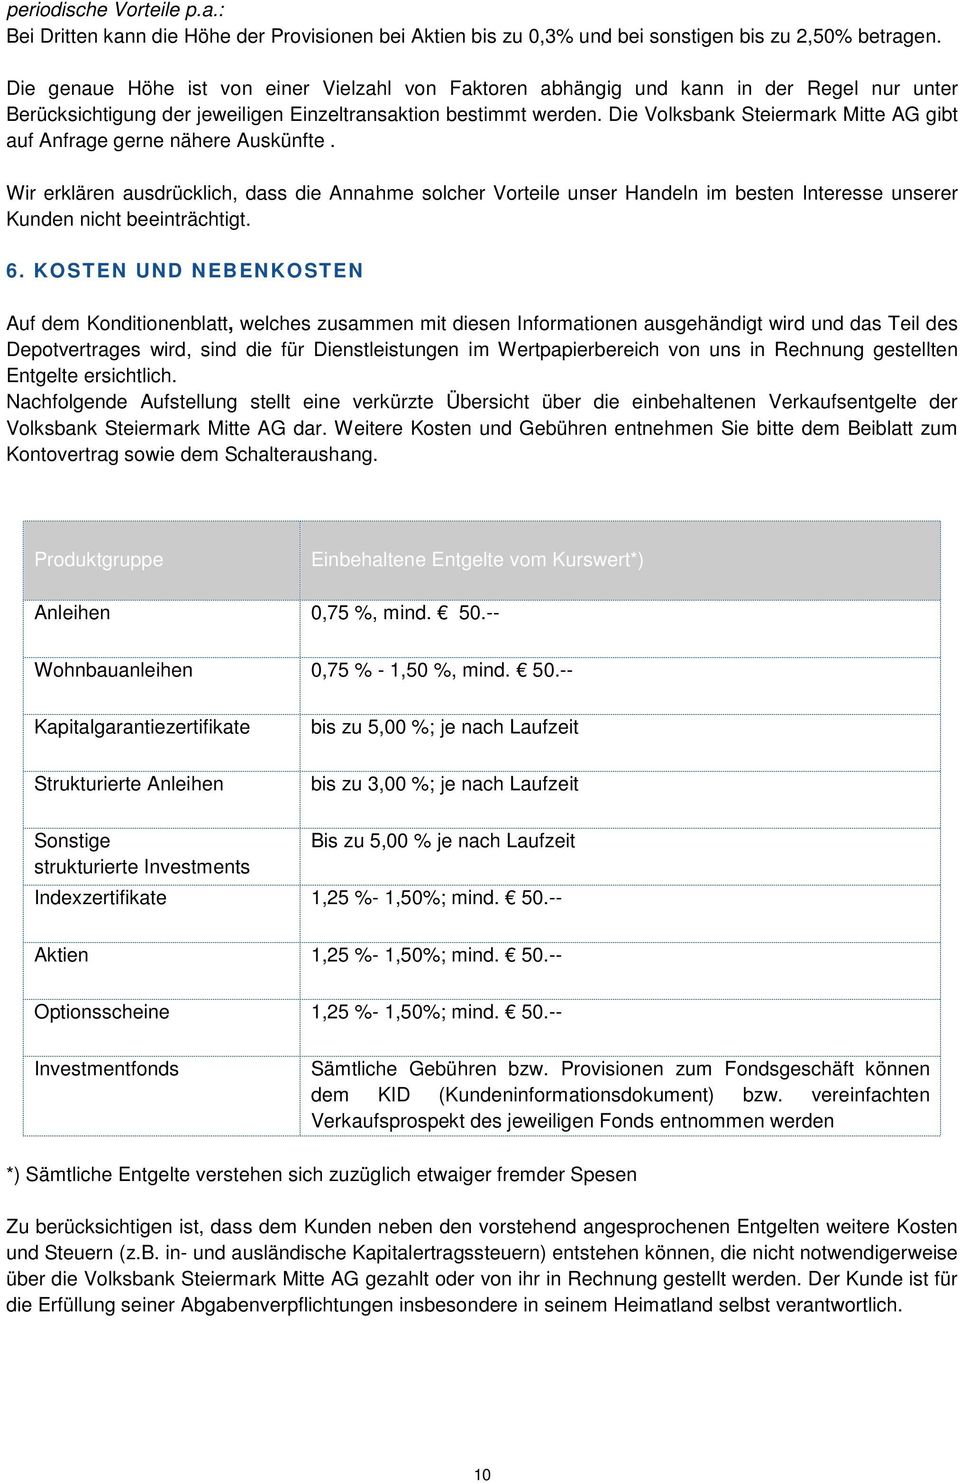 Die Volksbank Steiermark Mitte AG gibt auf Anfrage gerne nähere Auskünfte.